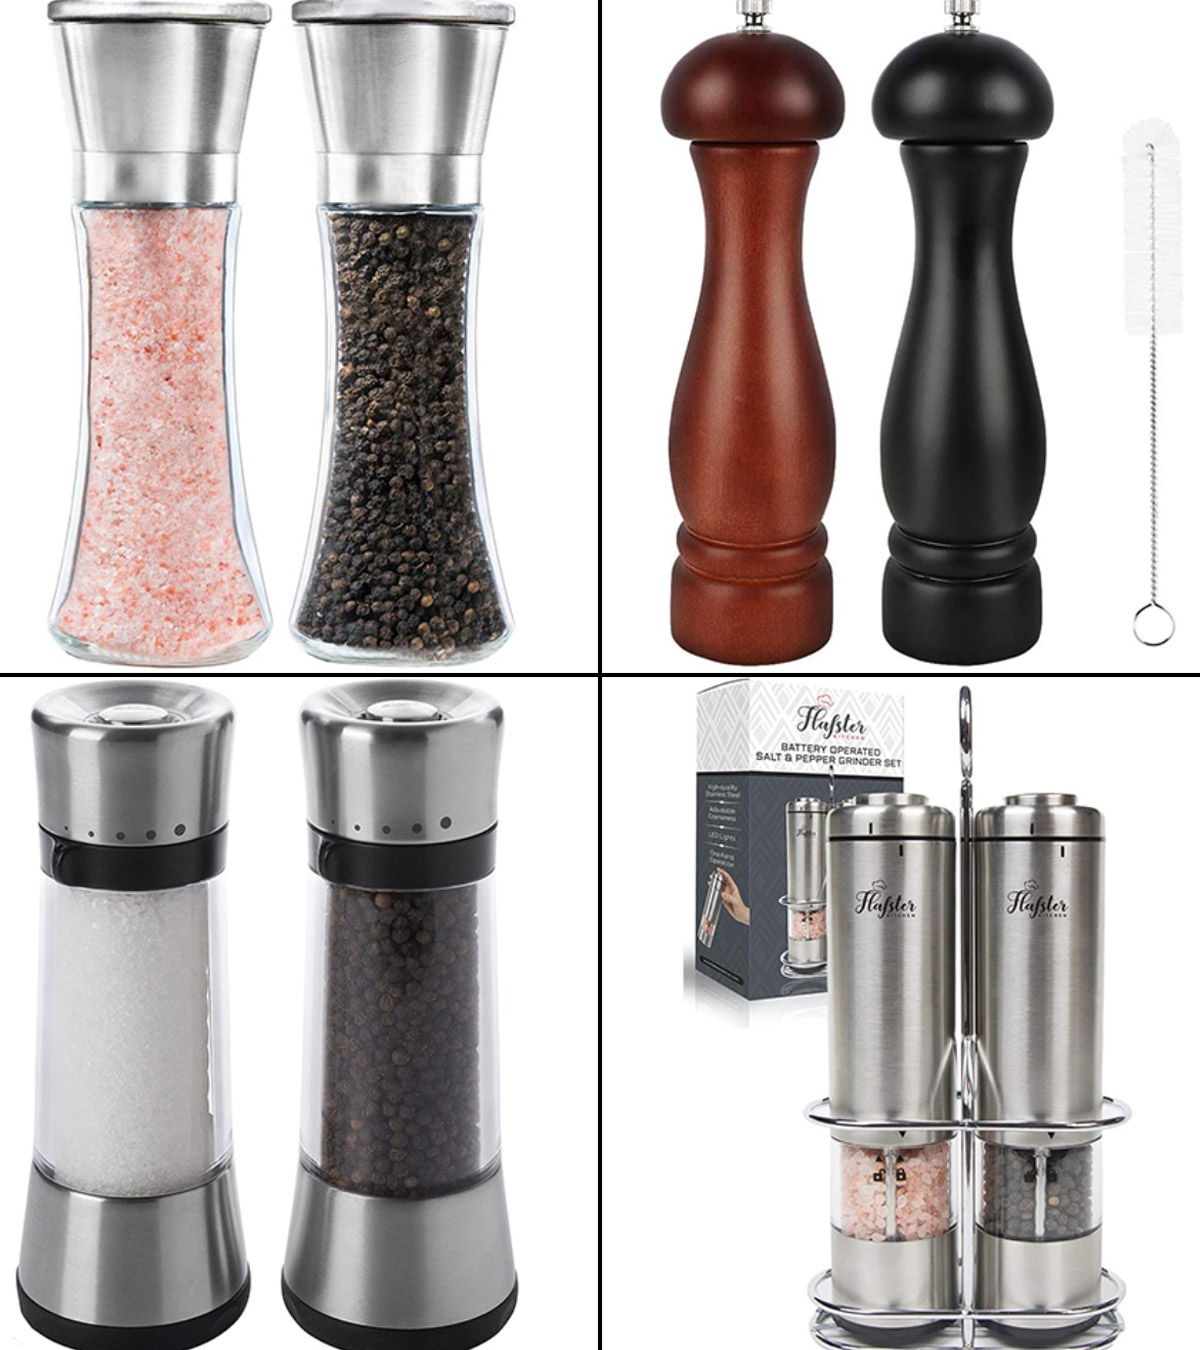 https://www.momjunction.com/wp-content/uploads/2020/07/Best-Salt-And-Pepper-Grinder-Sets1.jpg